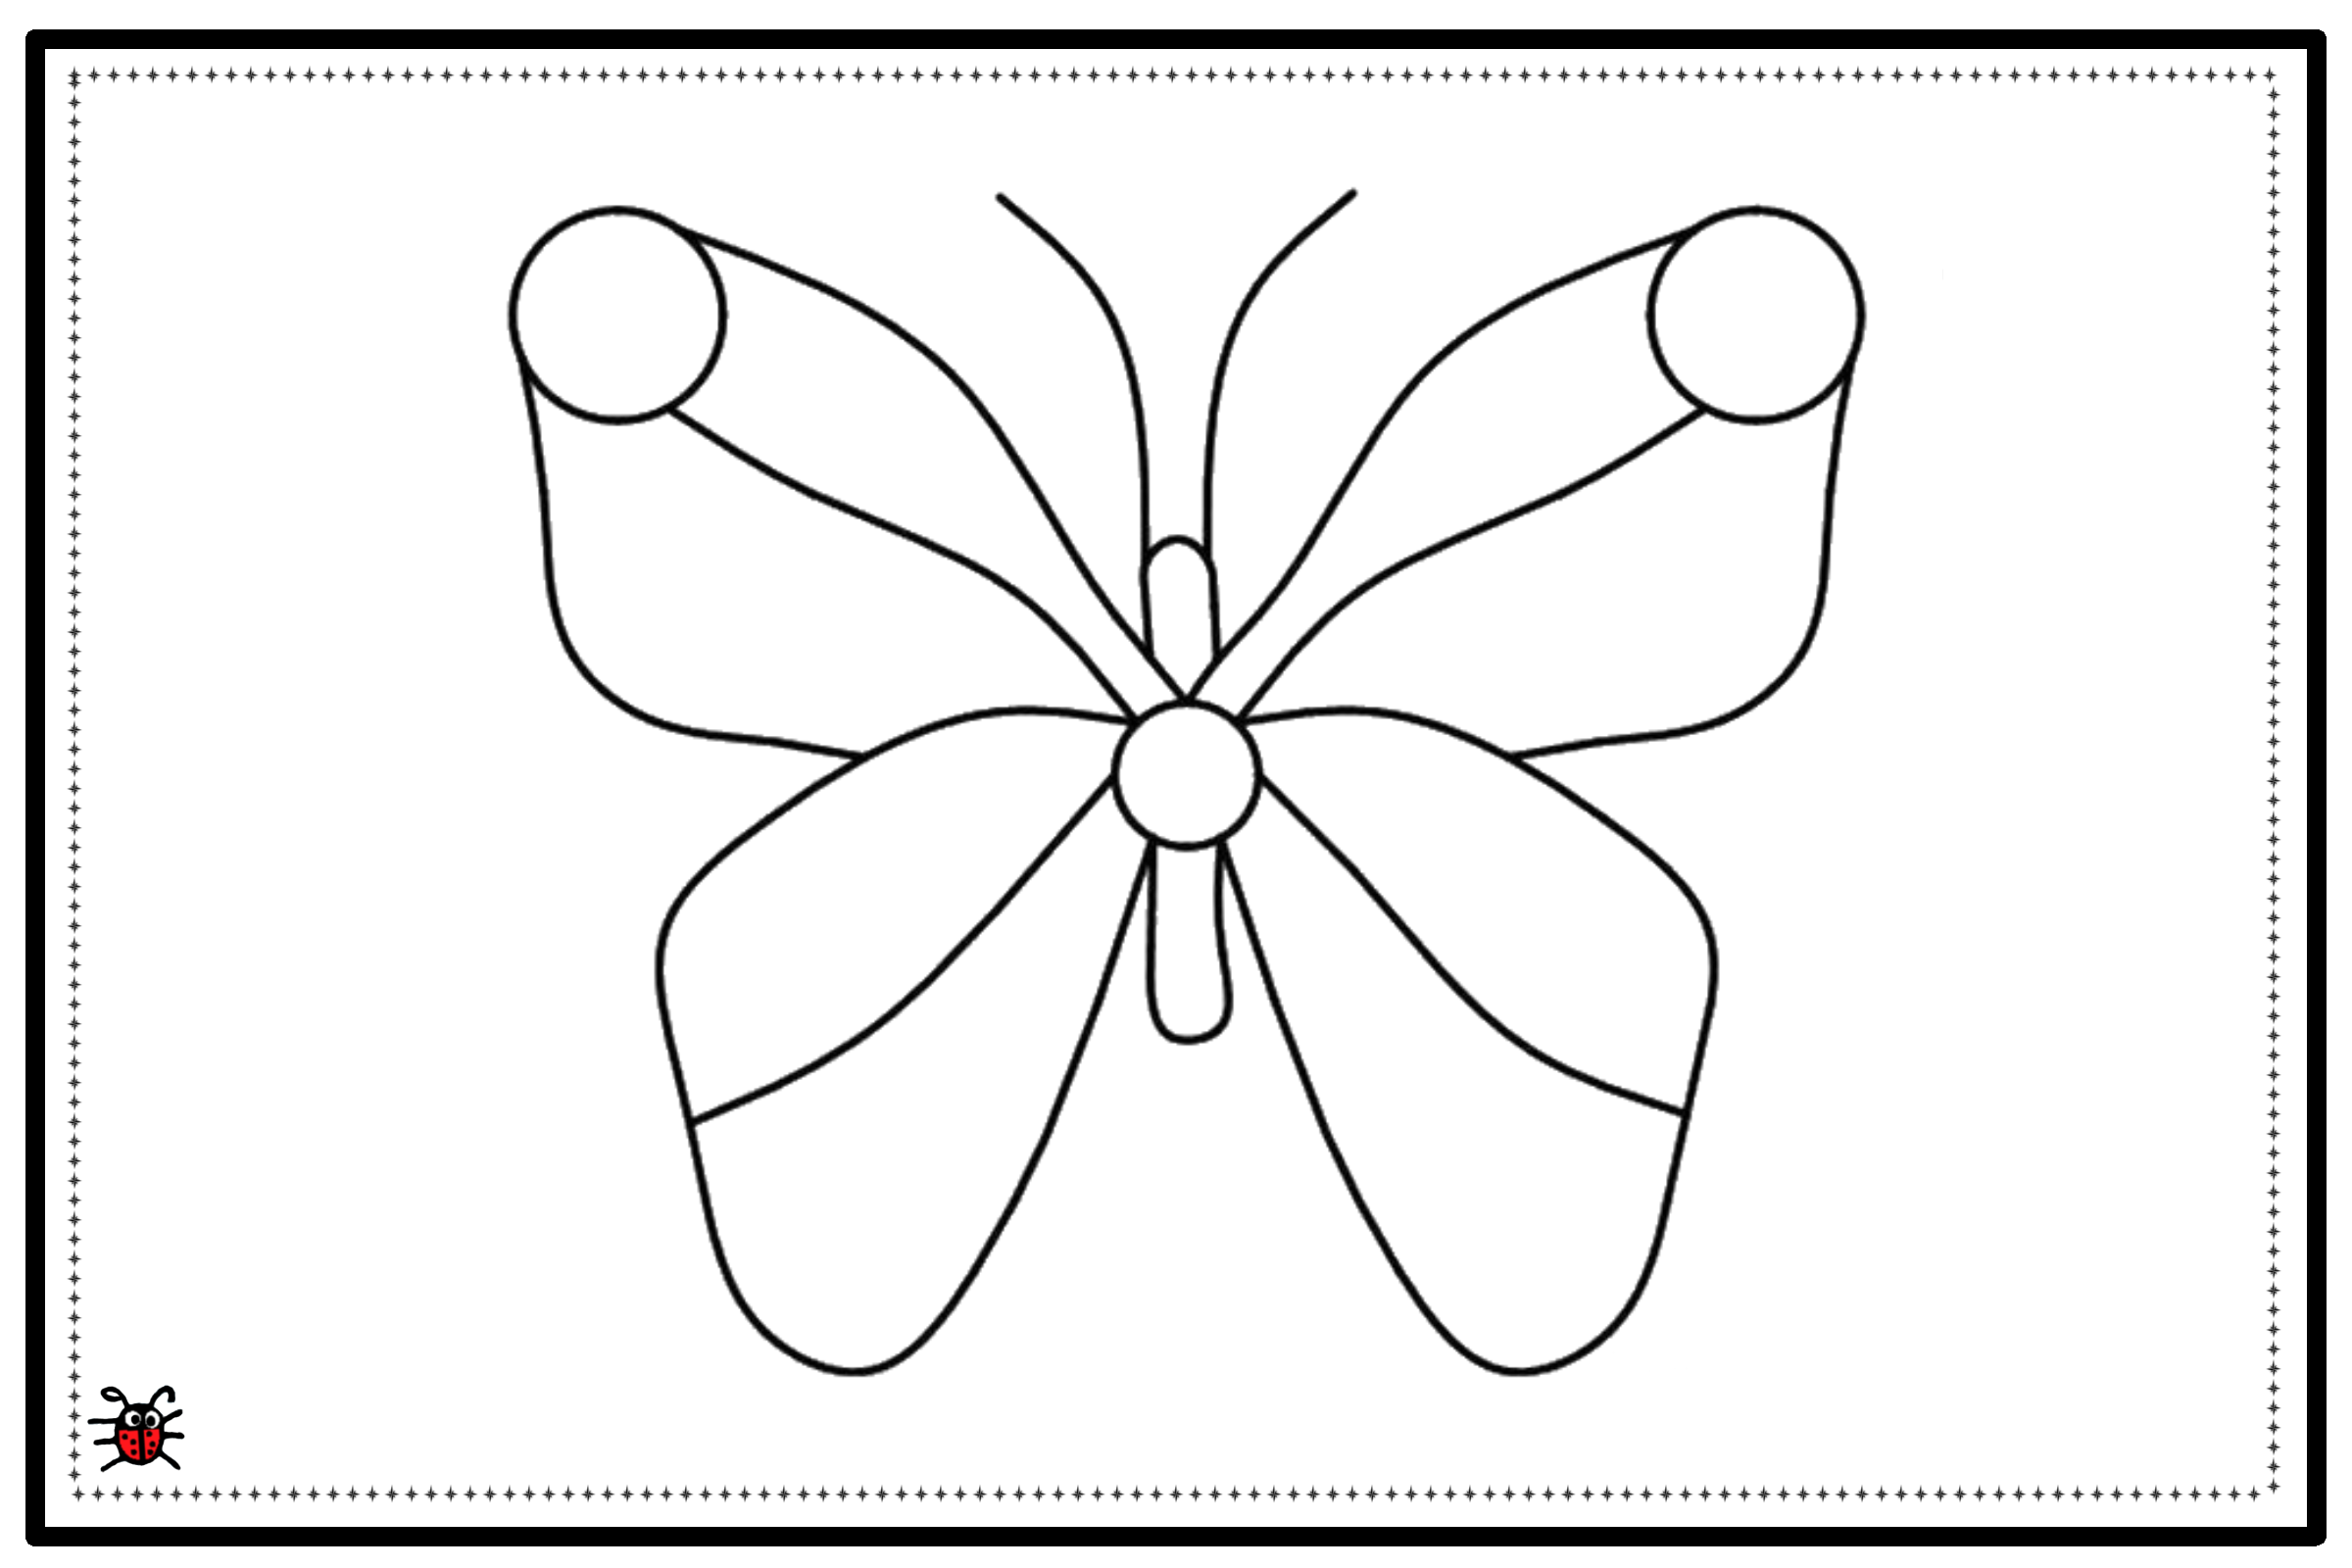 Пластилинография средняя группа шаблоны. Бабочка для пластилинографии. Бабочка для раскрашивания пластилином. Раскраска "бабочки". Бабочка раскраска пластилином.